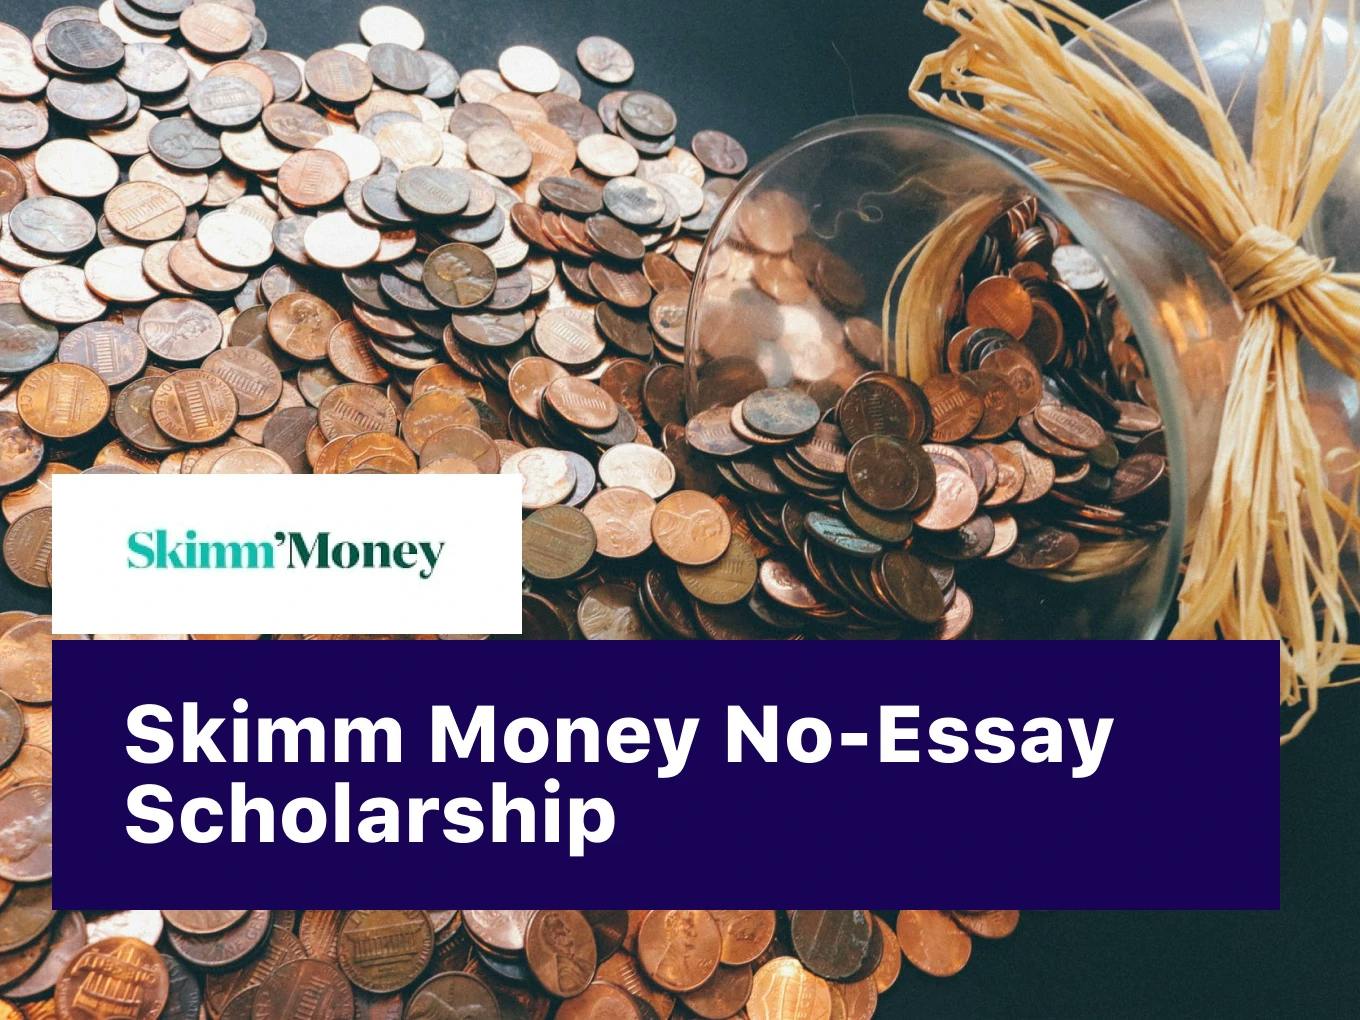 Skimm Money No-Essay Scholarship